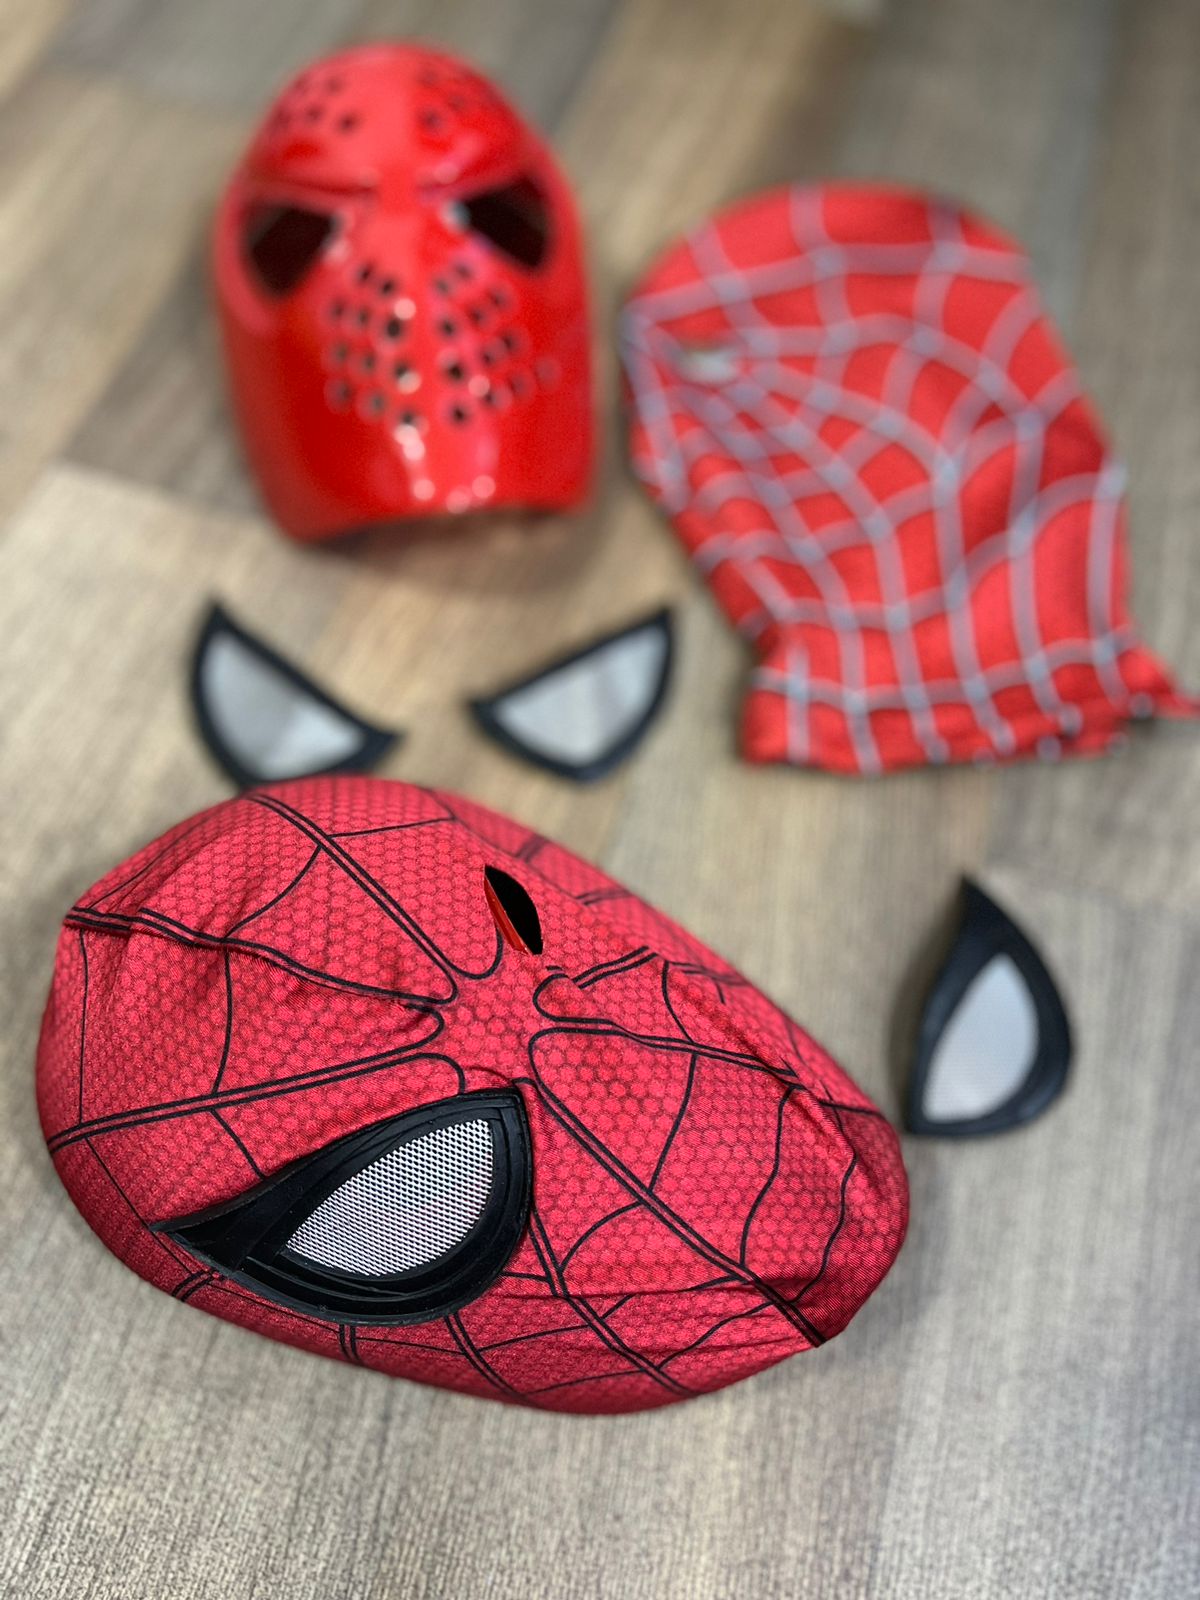 Disfraz para Niño Spiderman Body Mascara de Plástico